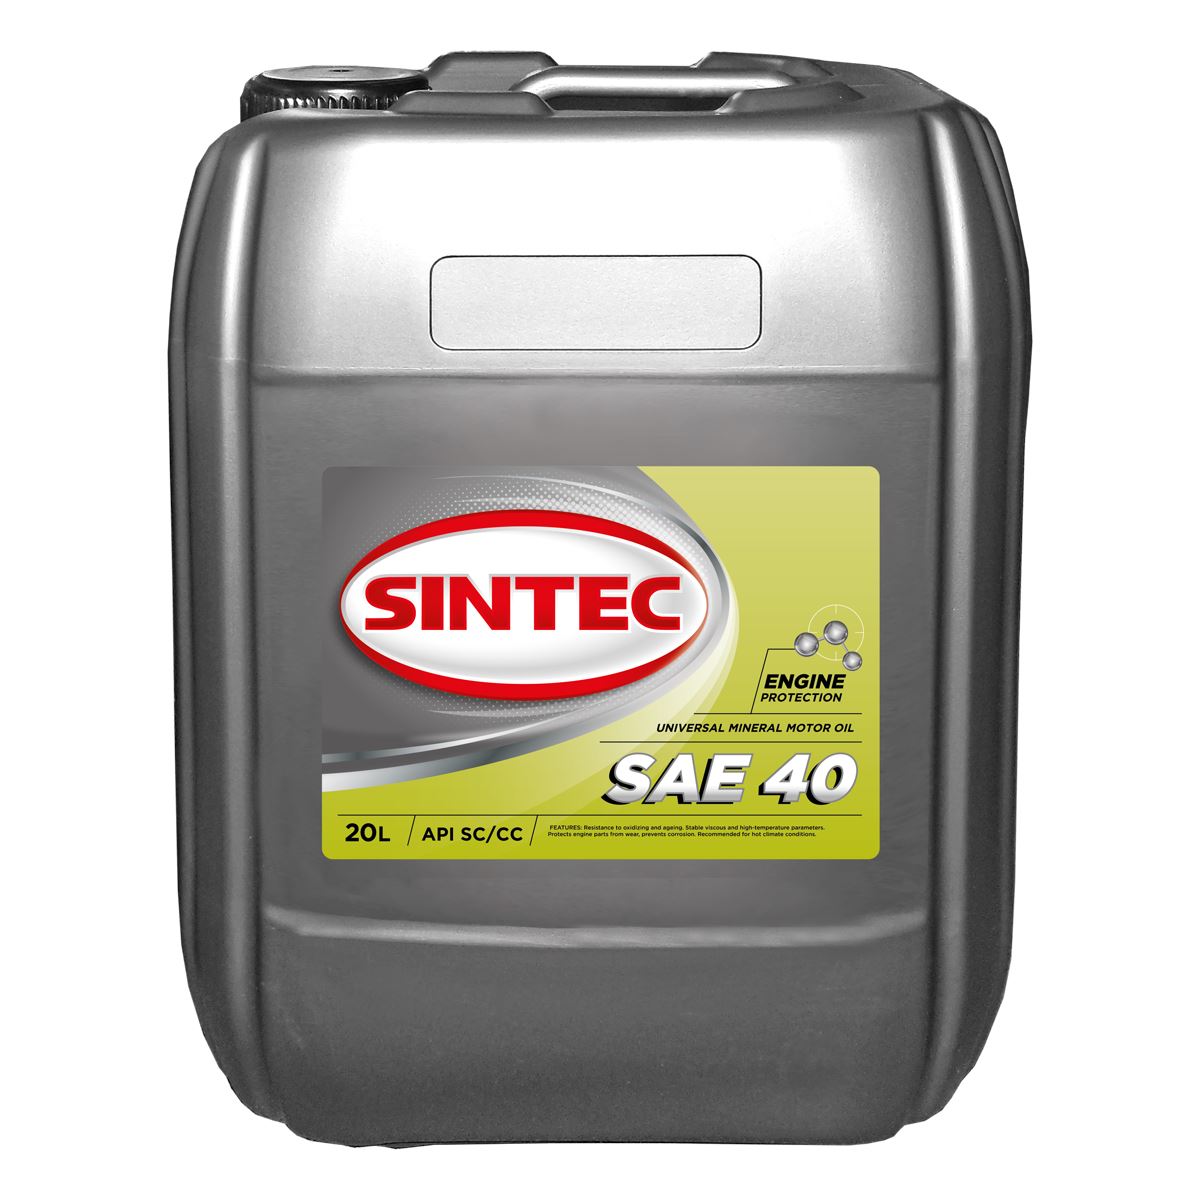 SINTEC SAE 40 API SC/CC